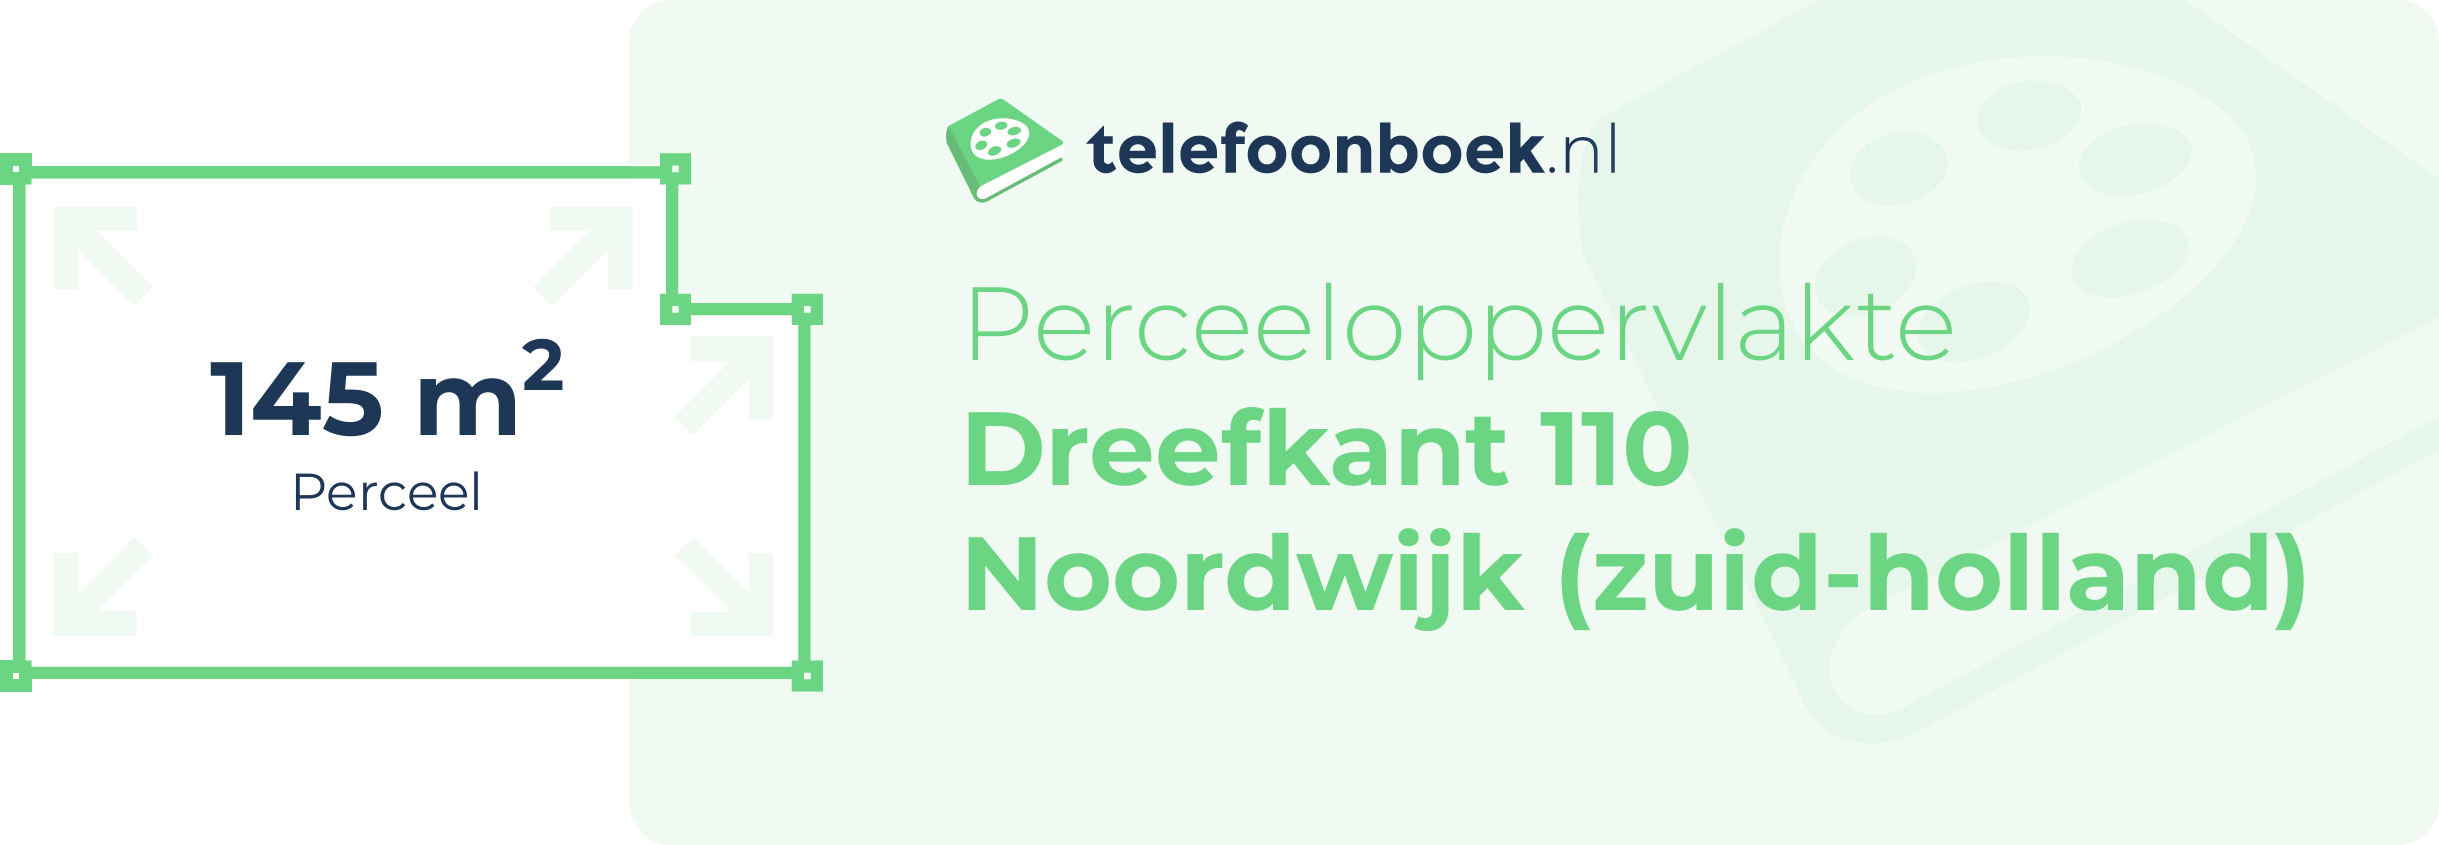 Perceeloppervlakte Dreefkant 110 Noordwijk (Zuid-Holland)